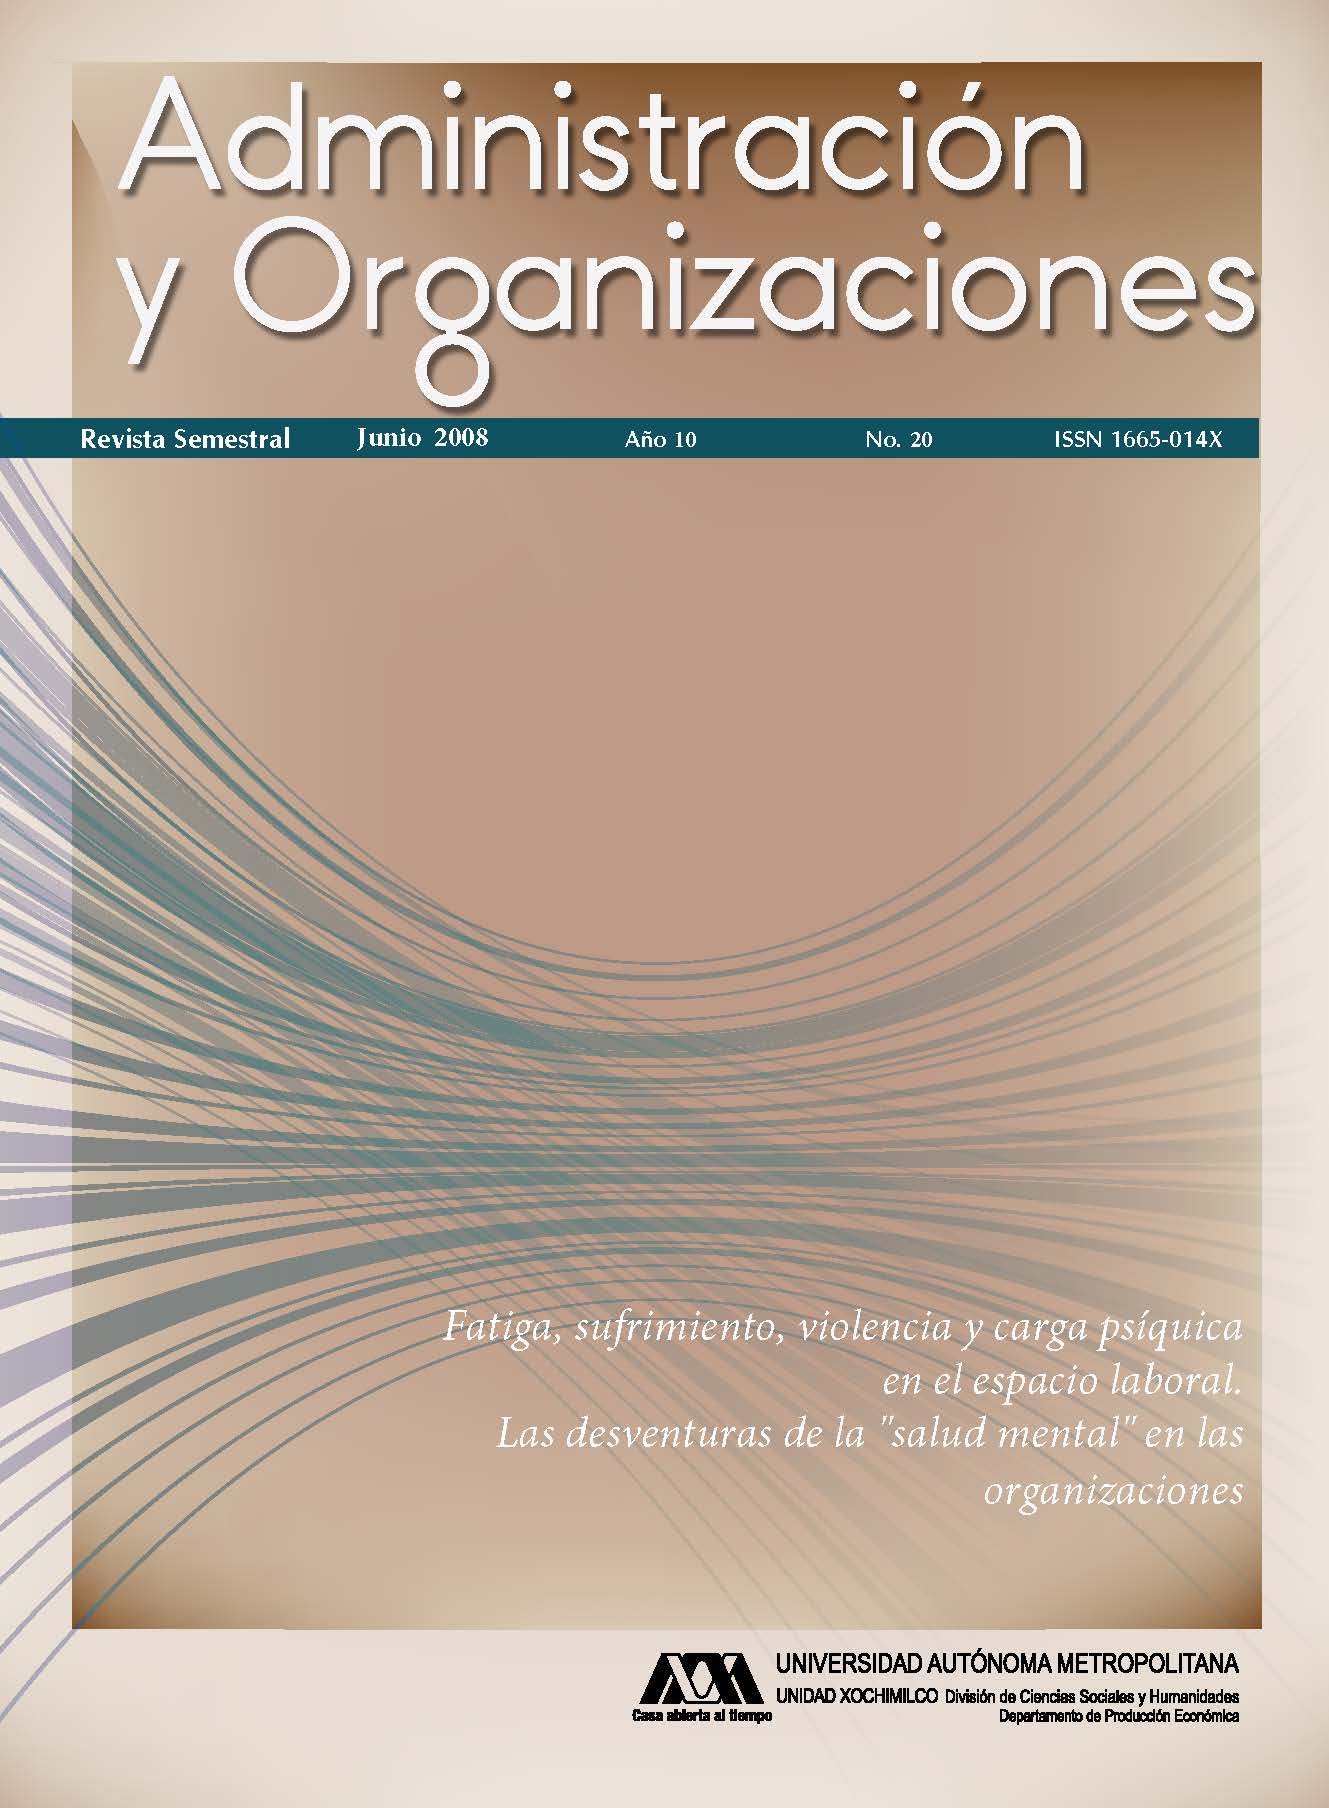 					Ver Vol. 10 Núm. 20 (10): Administración y Organizaciones
				